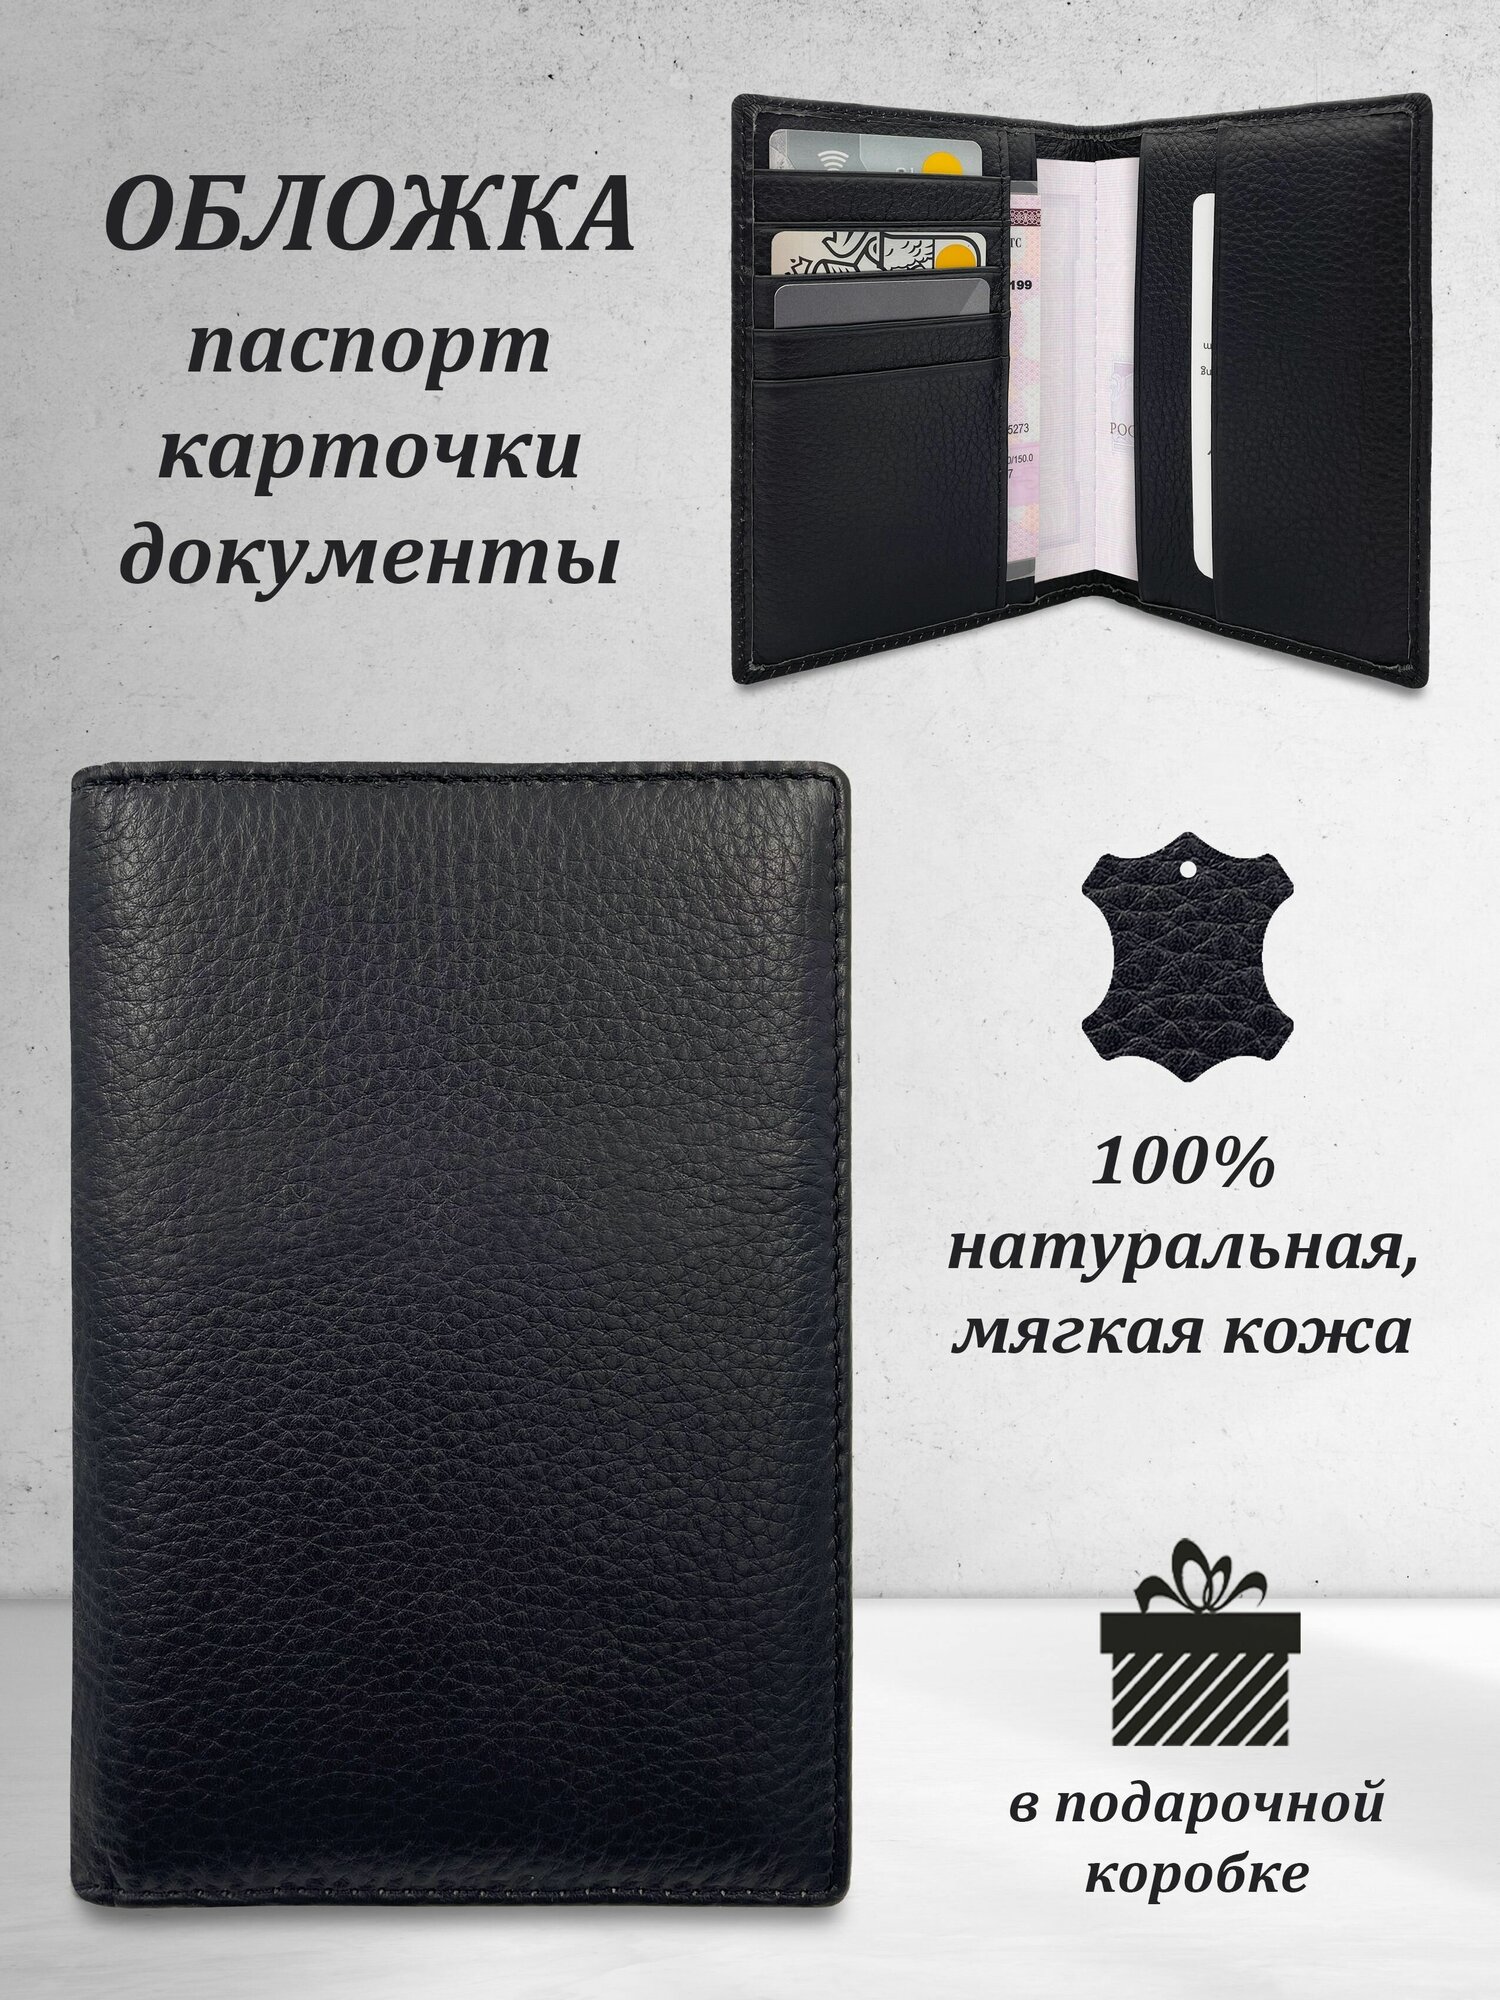 Обложка для паспорта из натуральной кожи с отсеками для документов и карт